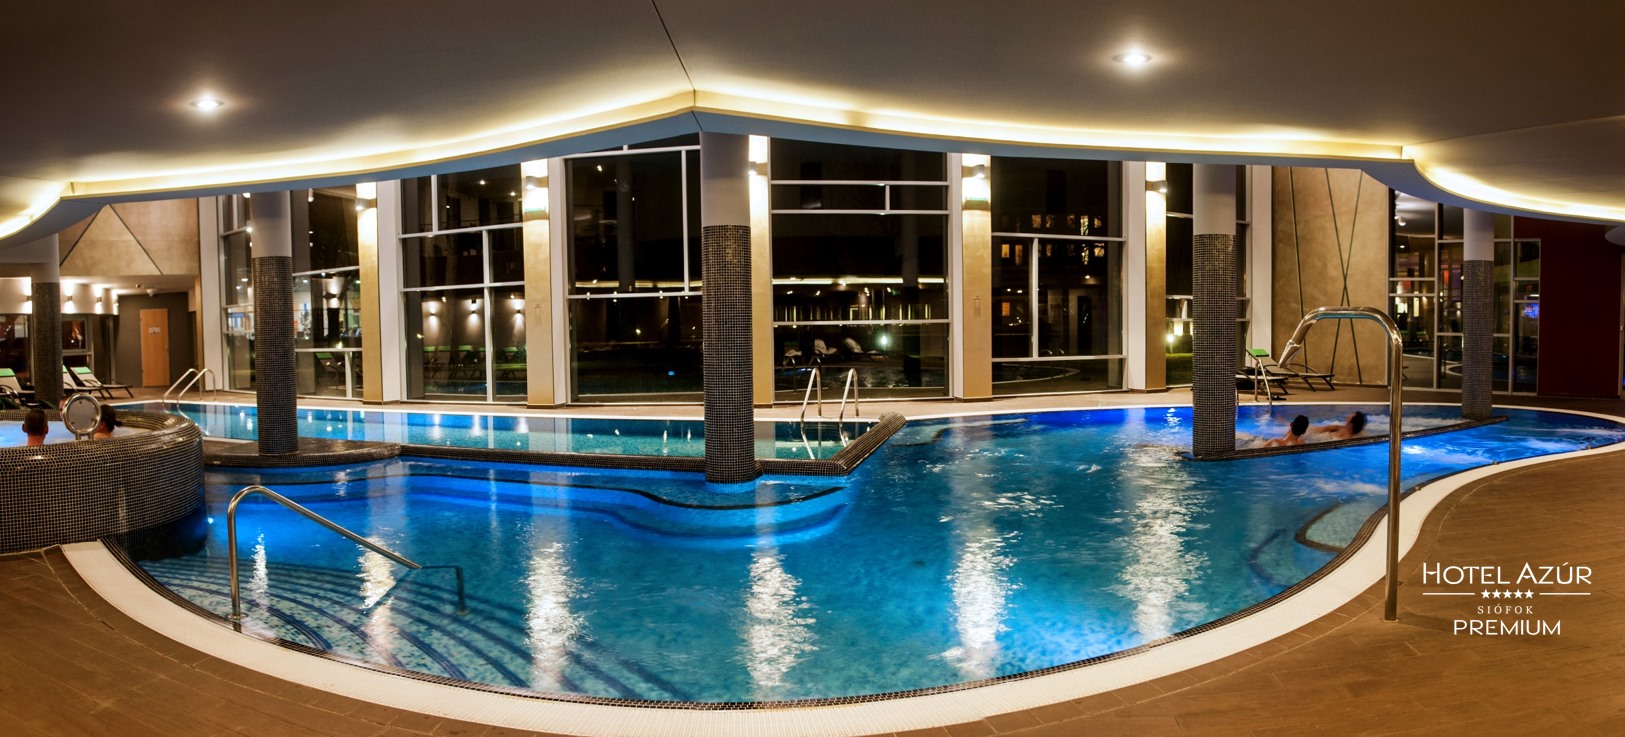 Hotel Azur Premium, baie, hotel, Ungaria